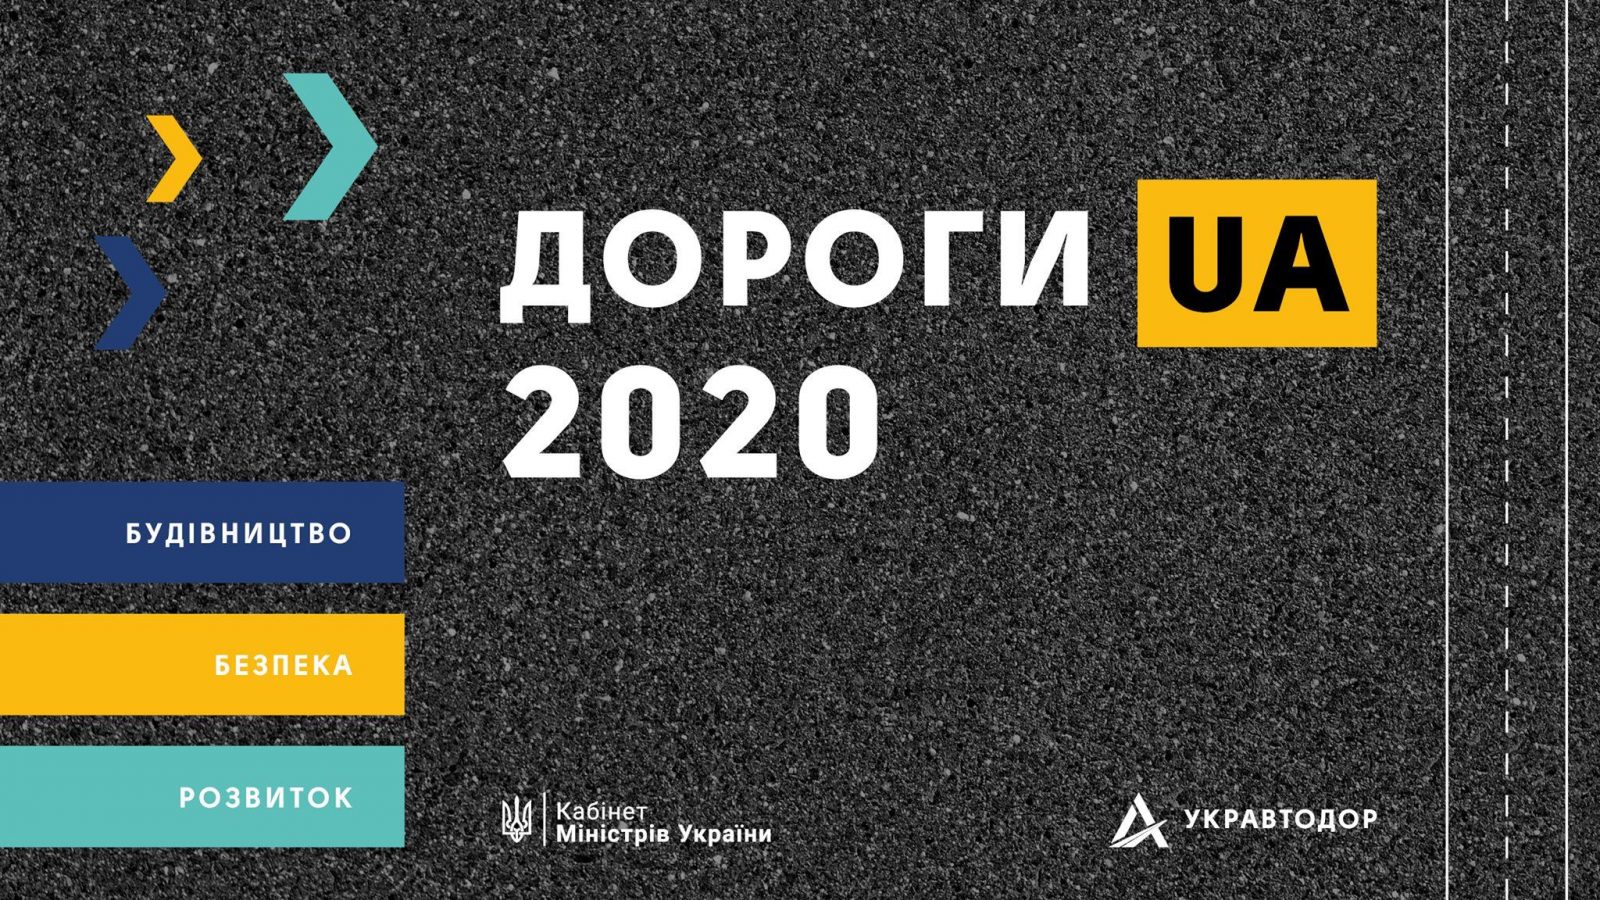 “ДорогиUA 2020”: які плани в Укравтодору на рік?